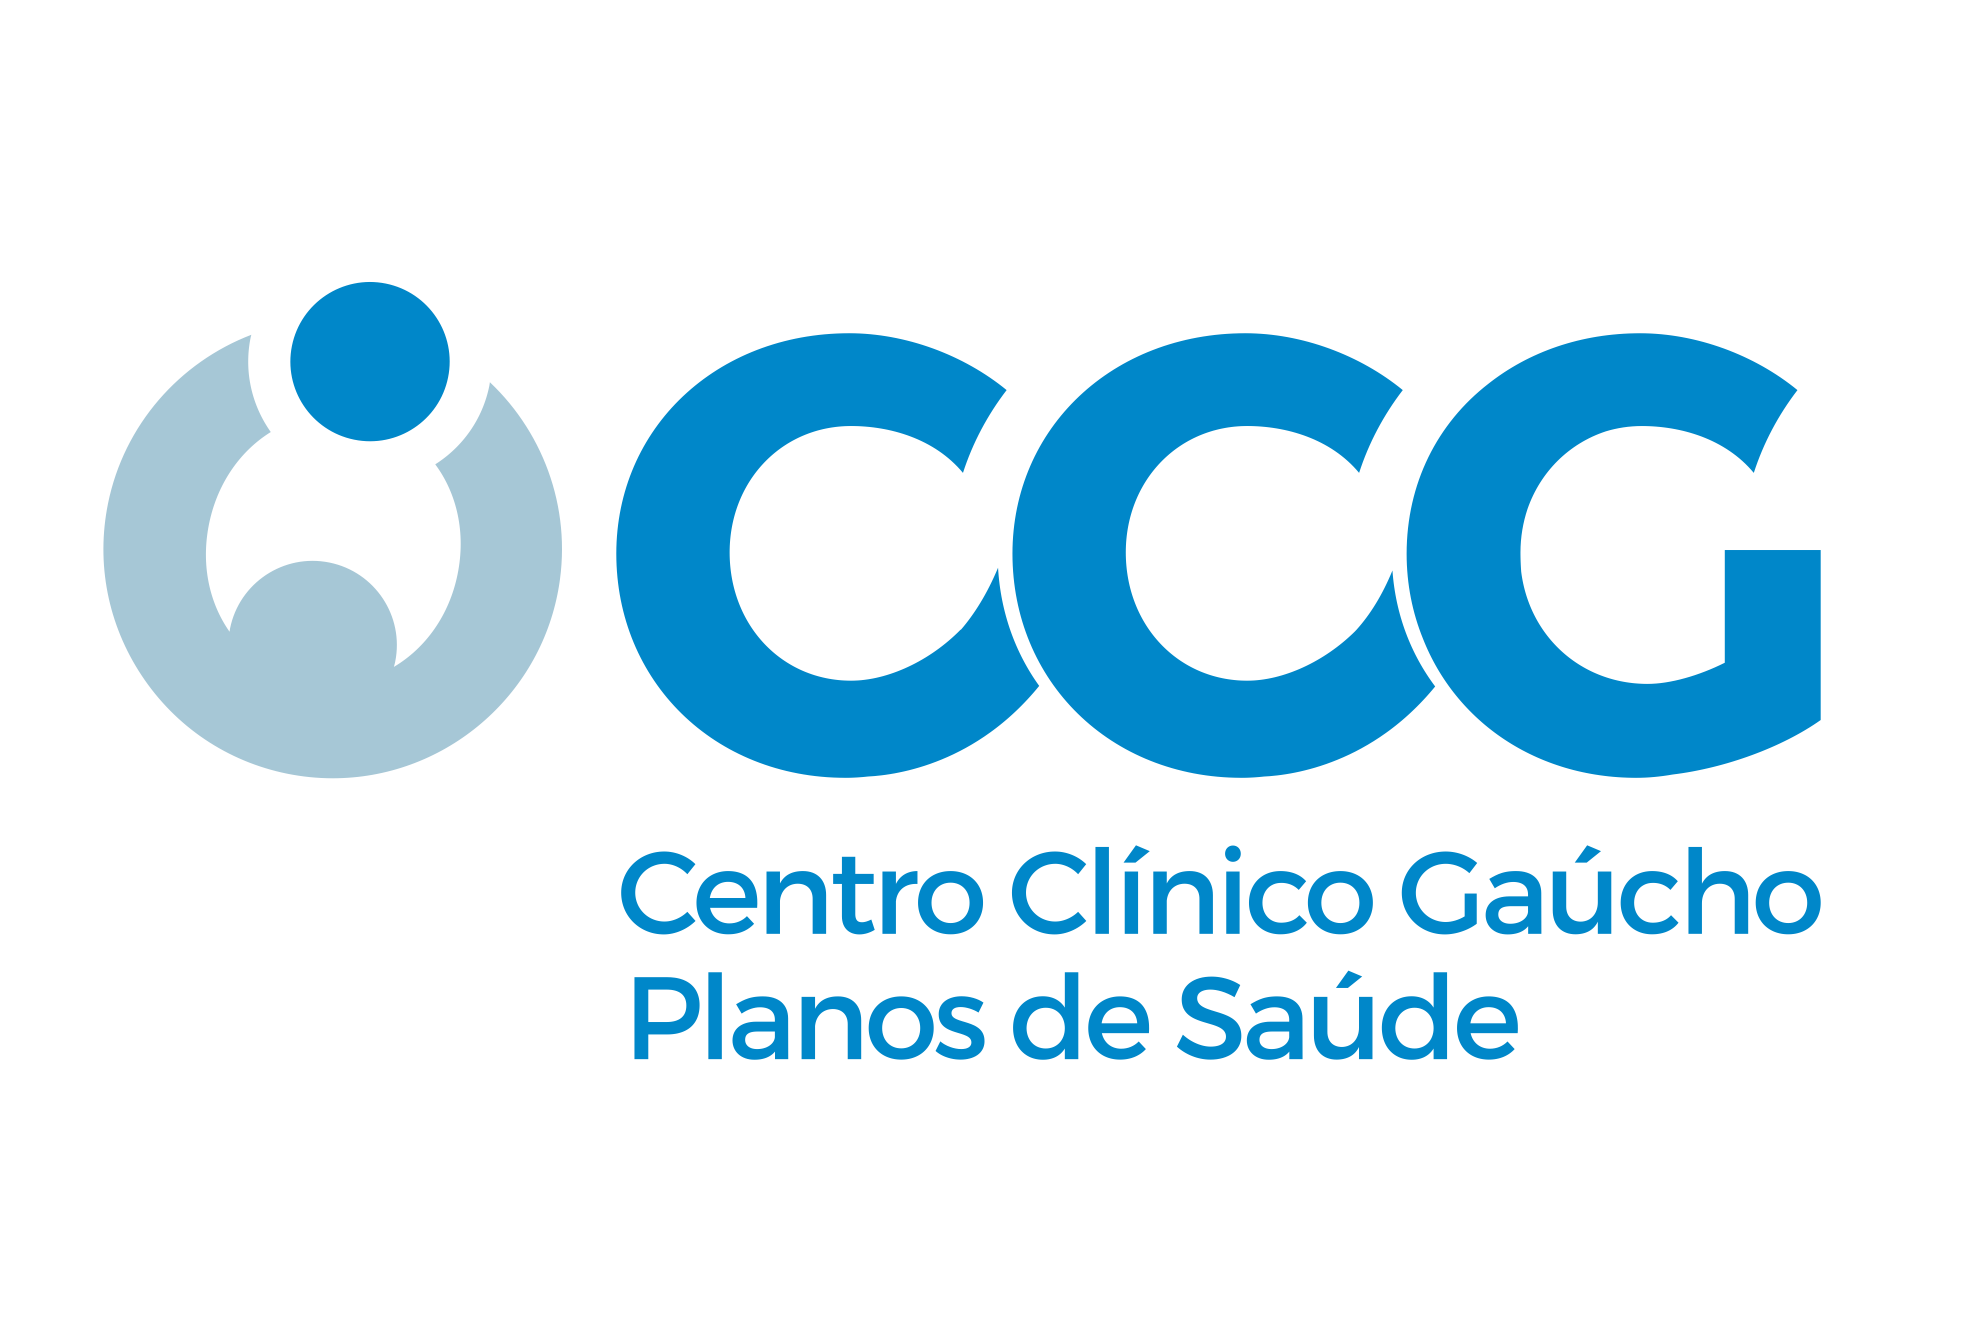 CENTRO CLINICO GAUCHO - Assistência Médica e Odontológica - Porto Alegre, RS